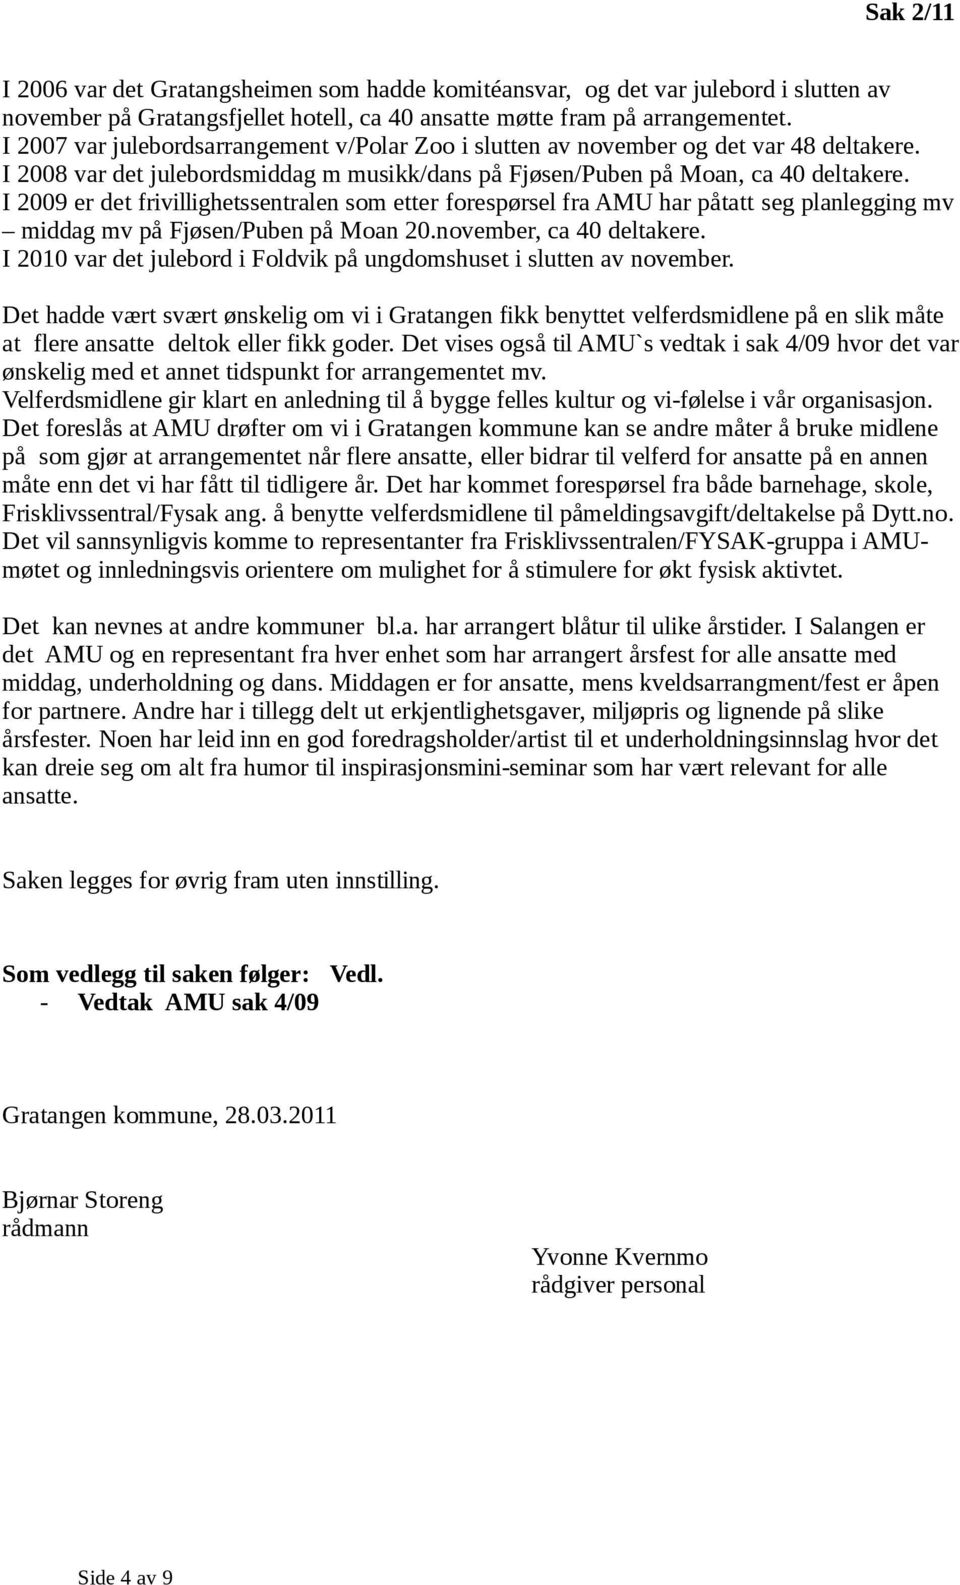 I 2009 er det frivillighetssentralen som etter forespørsel fra AMU har påtatt seg planlegging mv middag mv på Fjøsen/Puben på Moan 20.november, ca 40 deltakere.